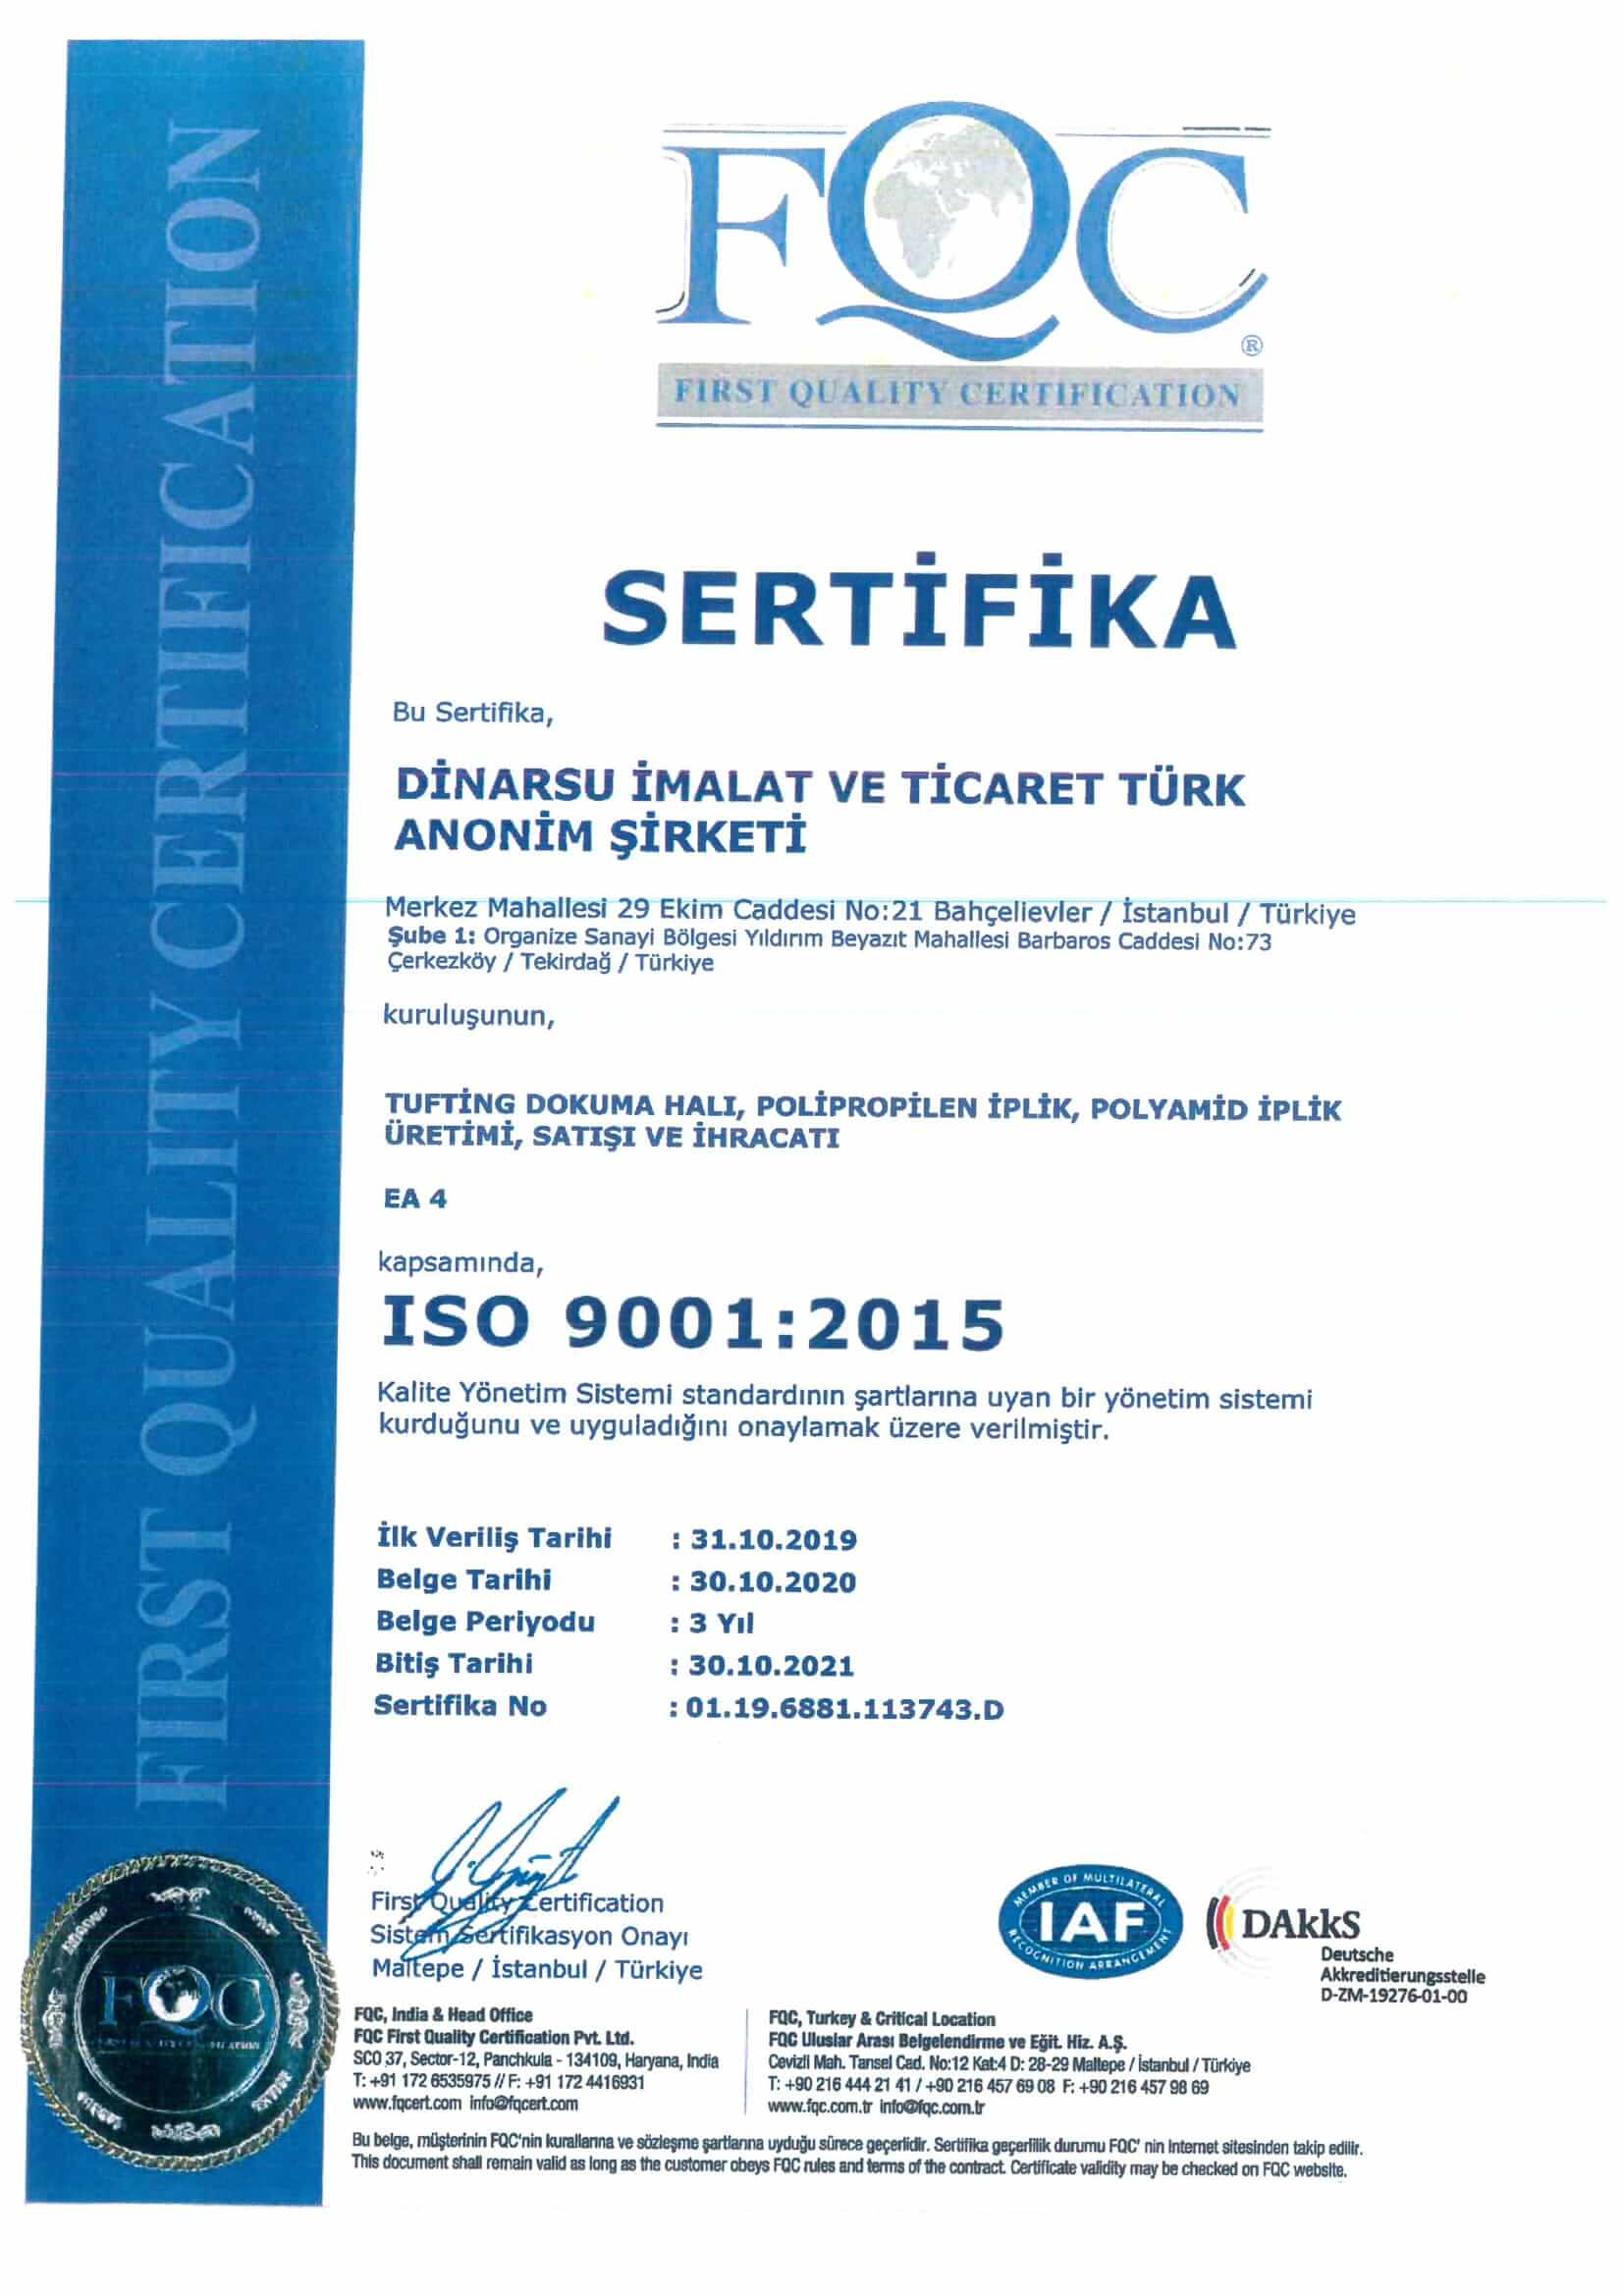 ISO 9001.2015 sertifika 2021 1